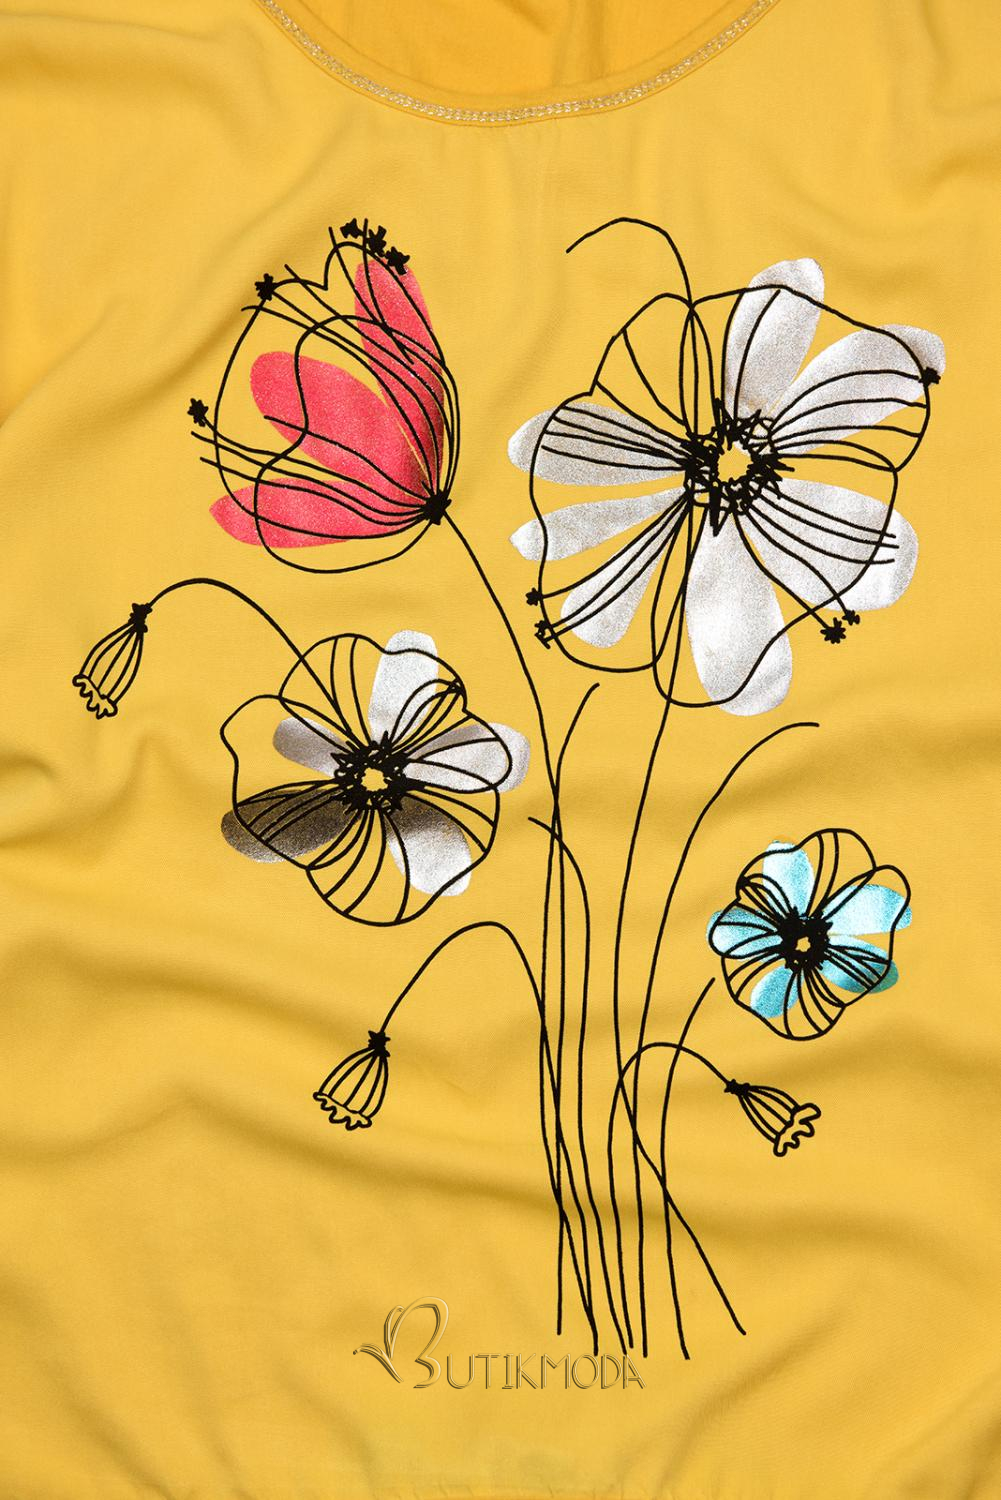 Sárga színű virágmintás póló